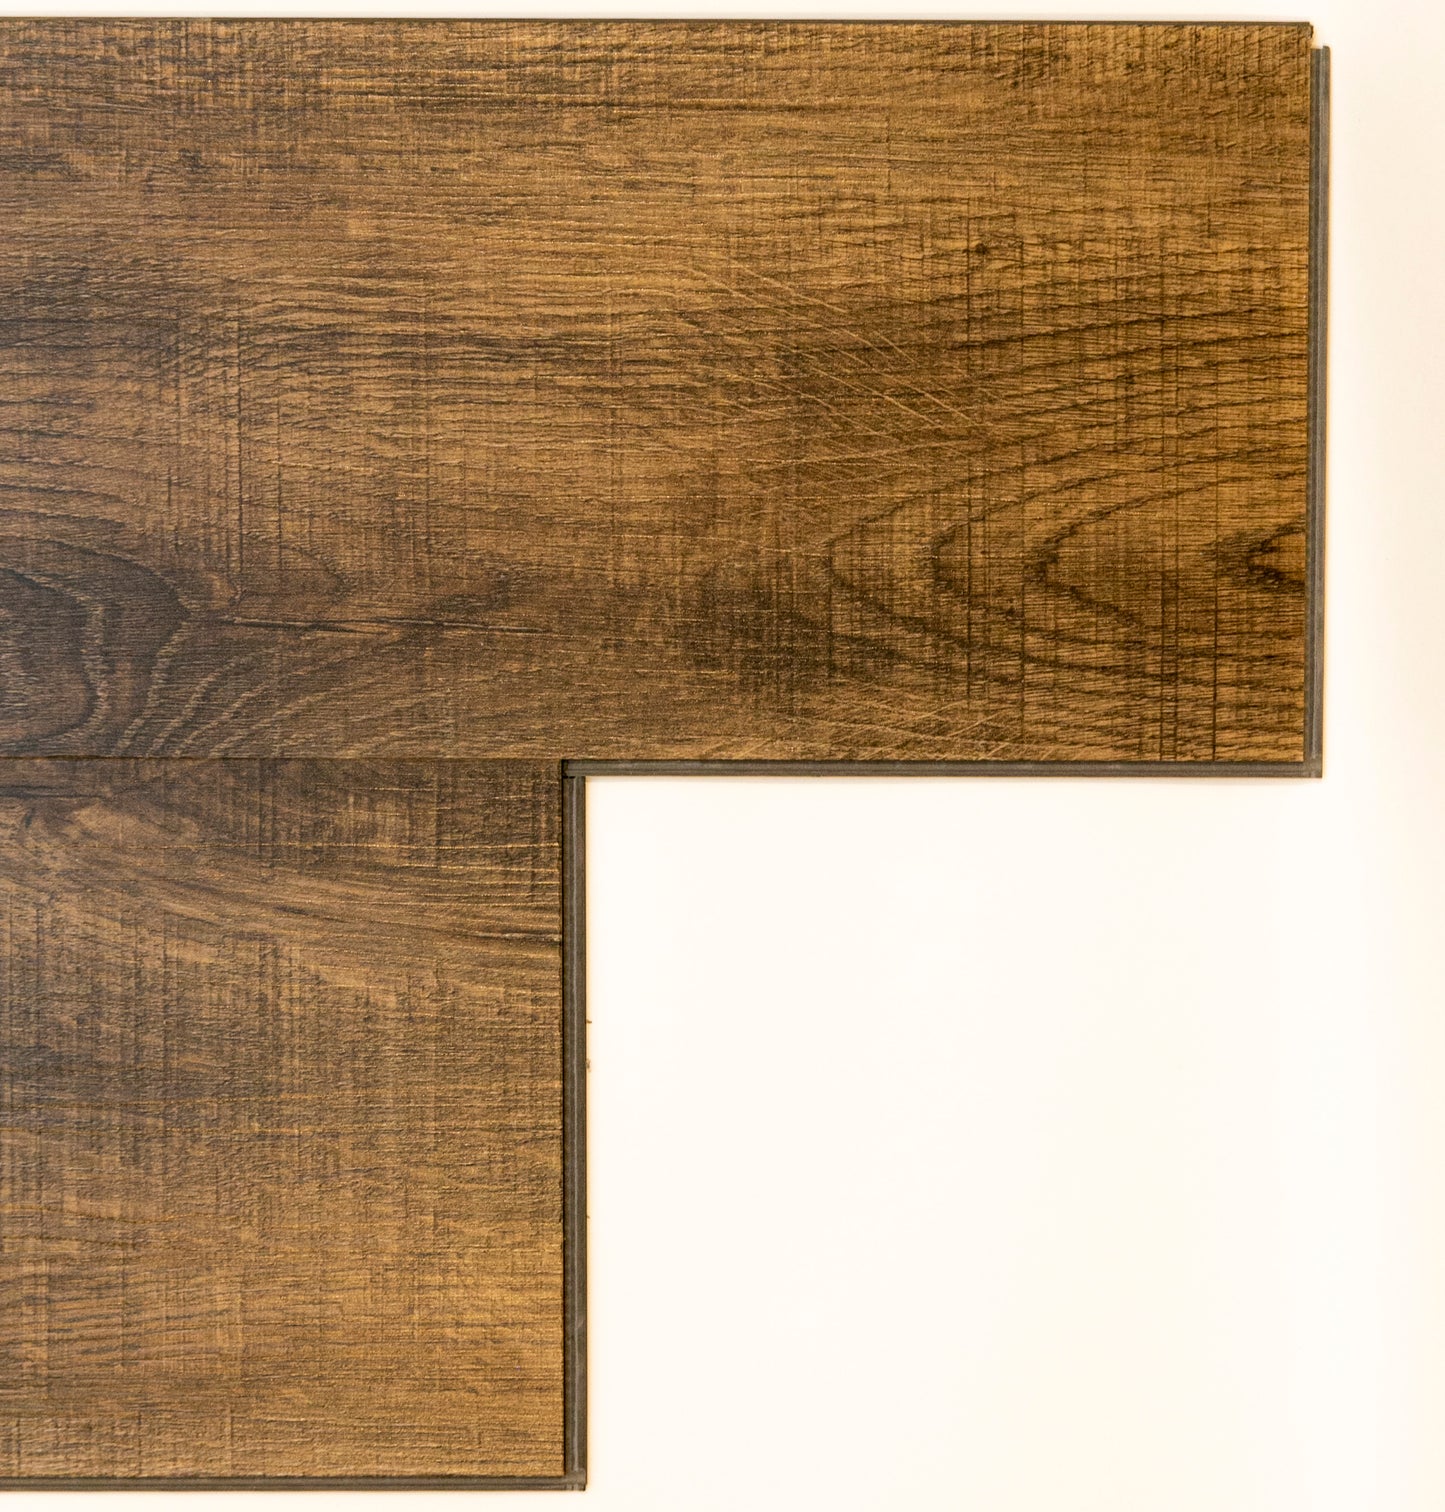 Vista Missouri Oak Waterproof Click Lock Vinyl Plank Flooring - 7.1 in. W x 48 in. L x 6 mm T